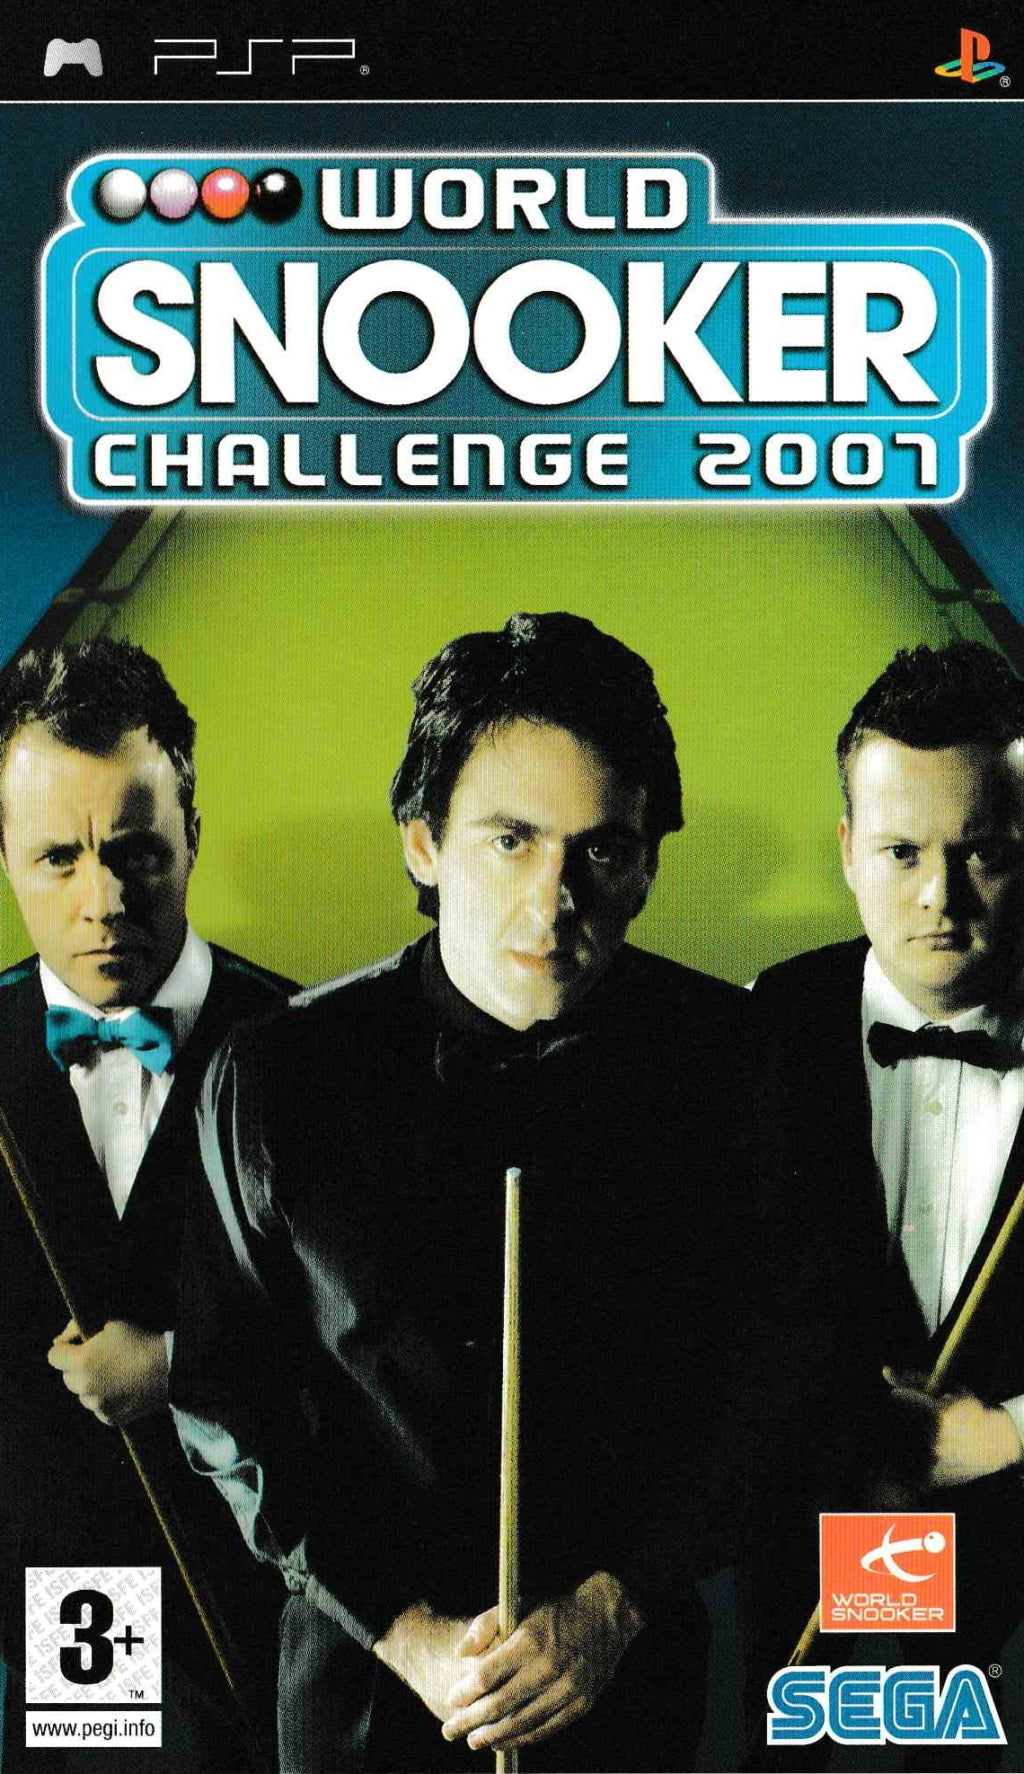 World Snooker Challenge 2007 - Sony PSP [Pre-Owned] (European Import) Video Games Sega   